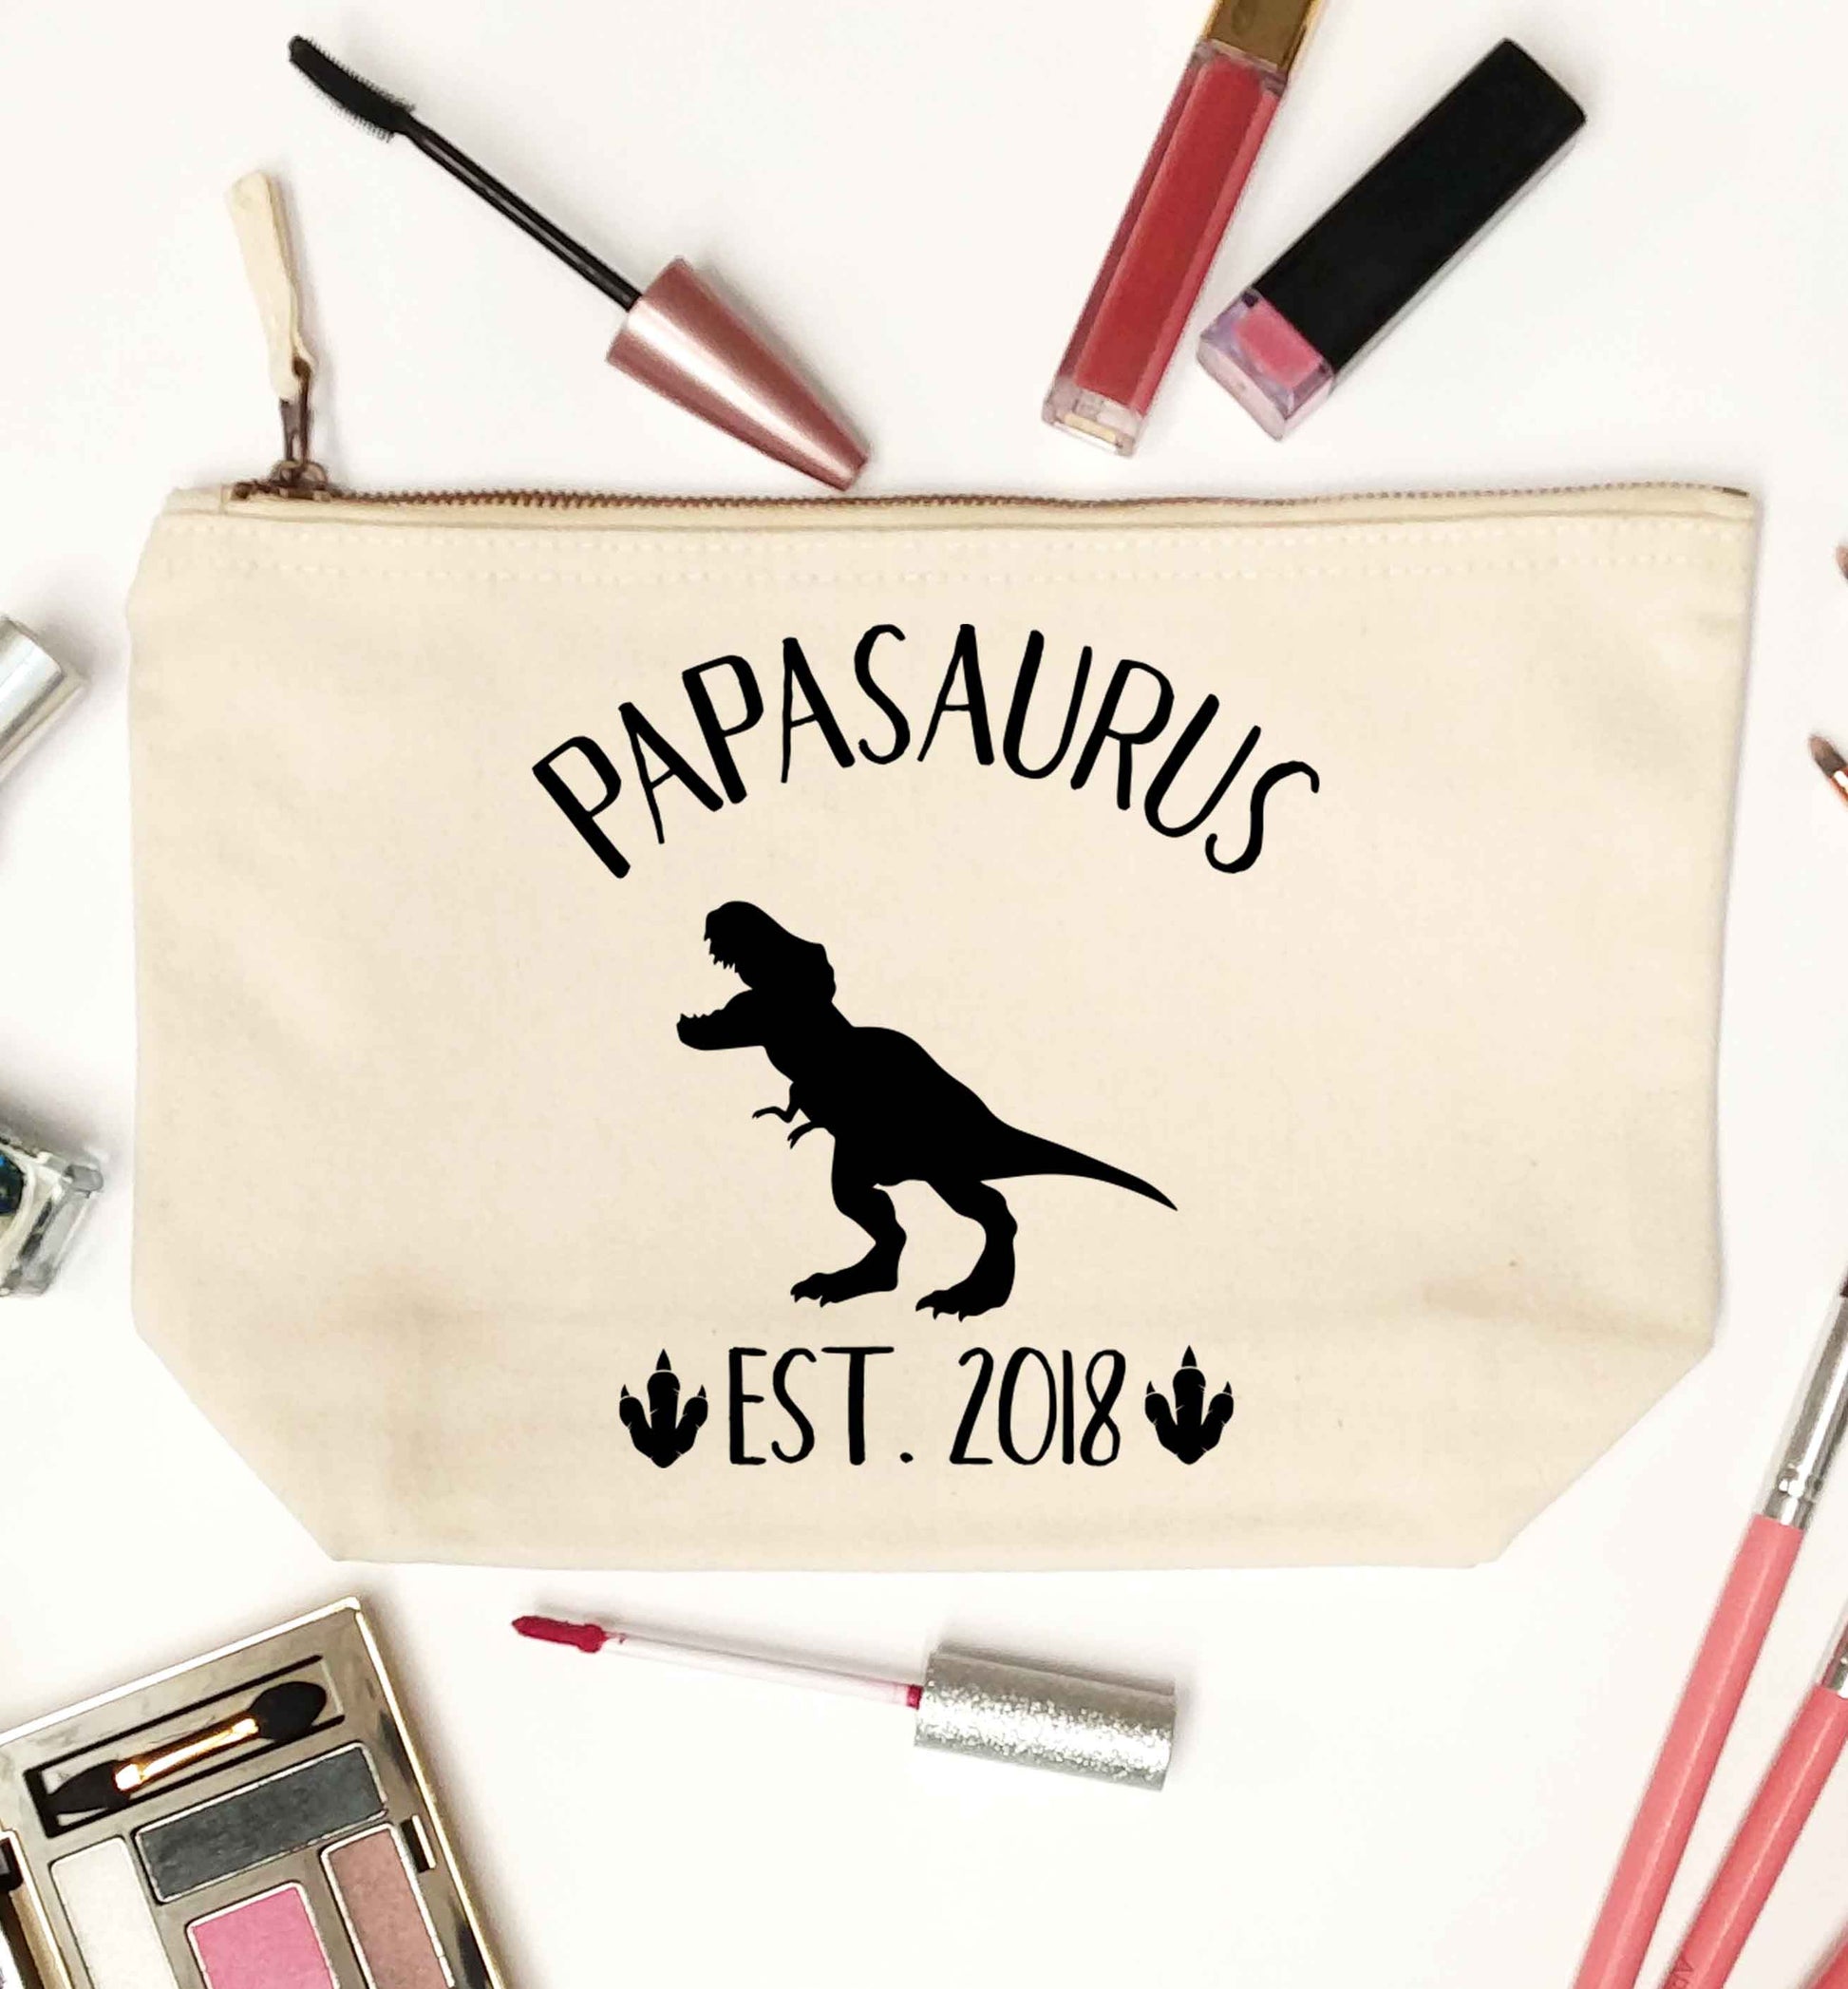 Personalised papasaurus since (custom date) natural makeup bag